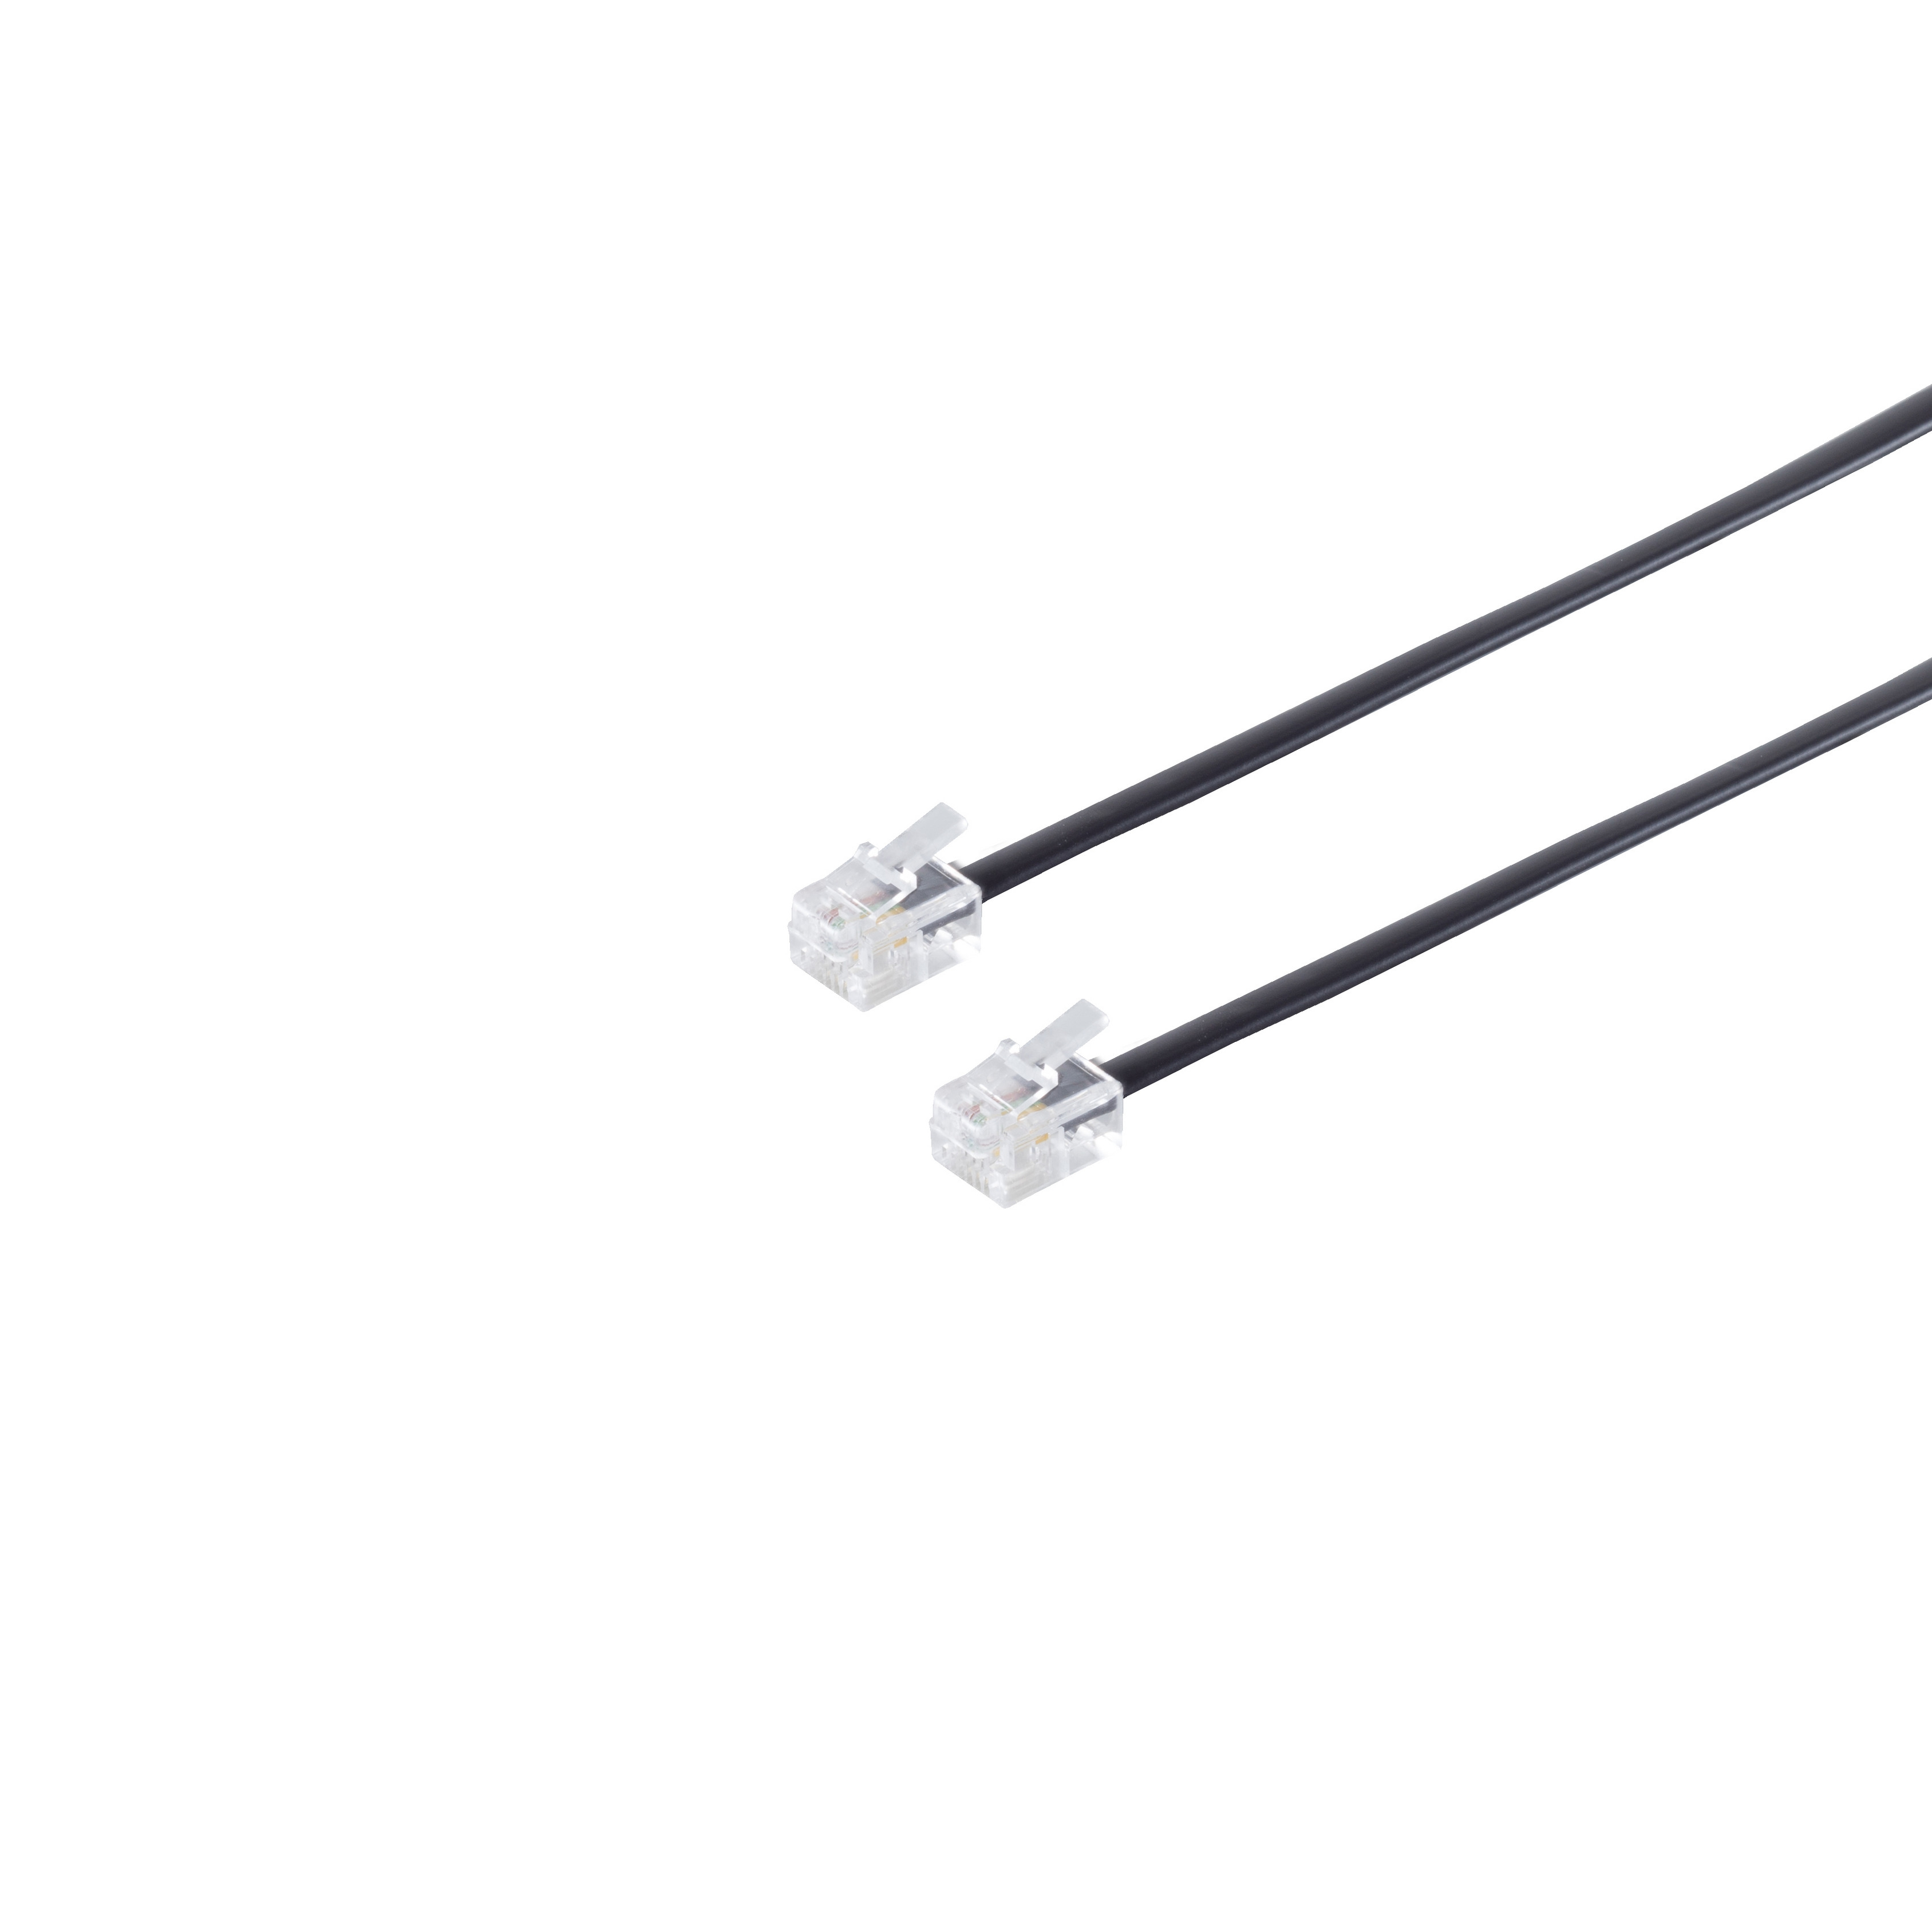 Kabel CONNECTIVITY Schwarz 6/4 / MAXIMUM Western-Stecker 6/4 15m ISDN S/CONN Western-Stecker